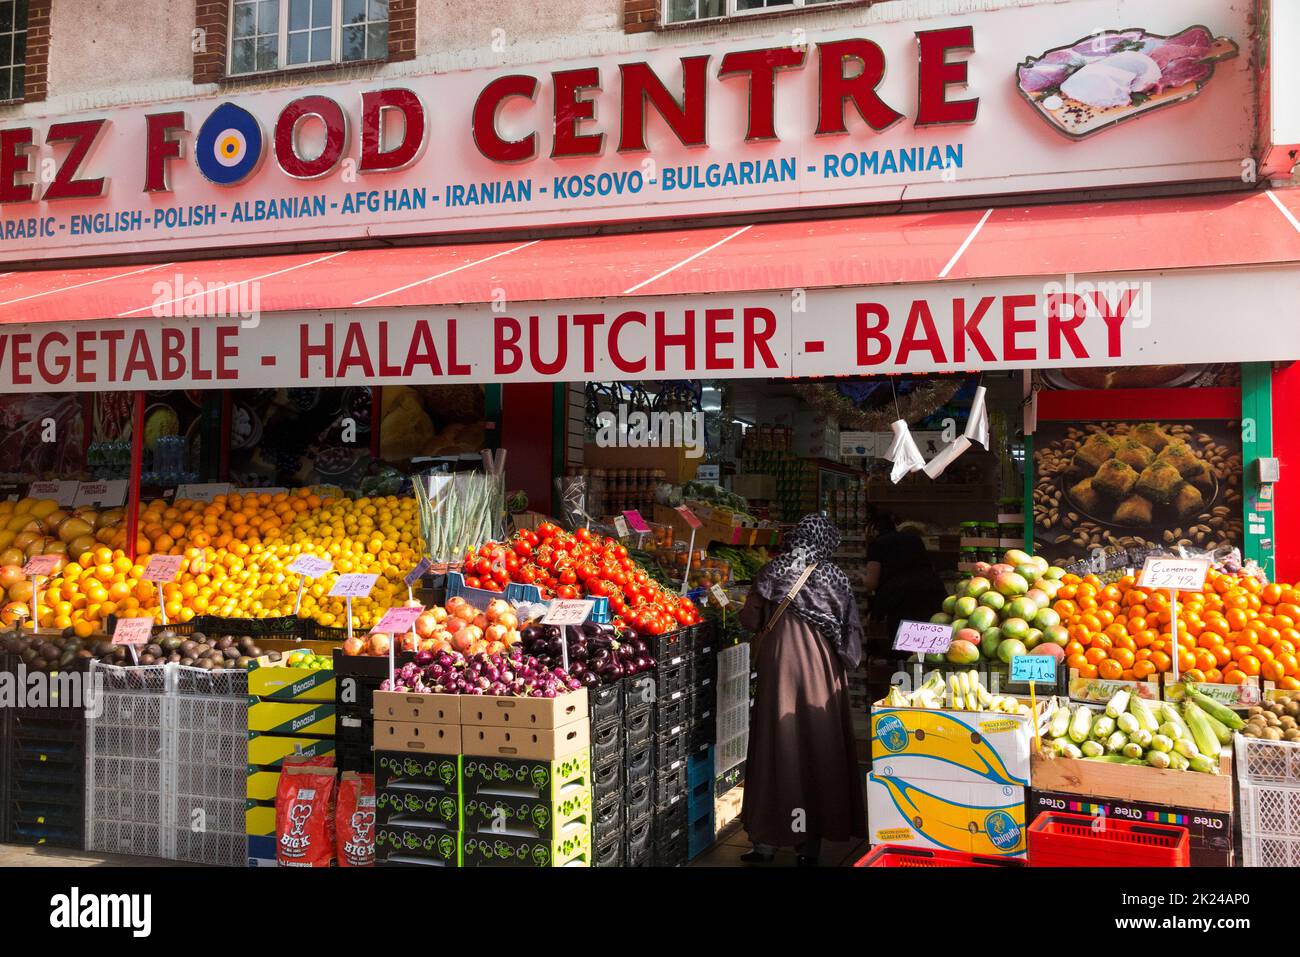 Mez Food Center Greenford, Greenford Rd, Greenford, è un negozio di alimentari di frutta e verdura verde, e anche un macellaio halal e panetteria, fornendo e vendendo arabo, inglese, polacco, albanese, afghano, Prodotti alimentari iraniani, kosovari, bulgari e rumeni. (132) Foto Stock